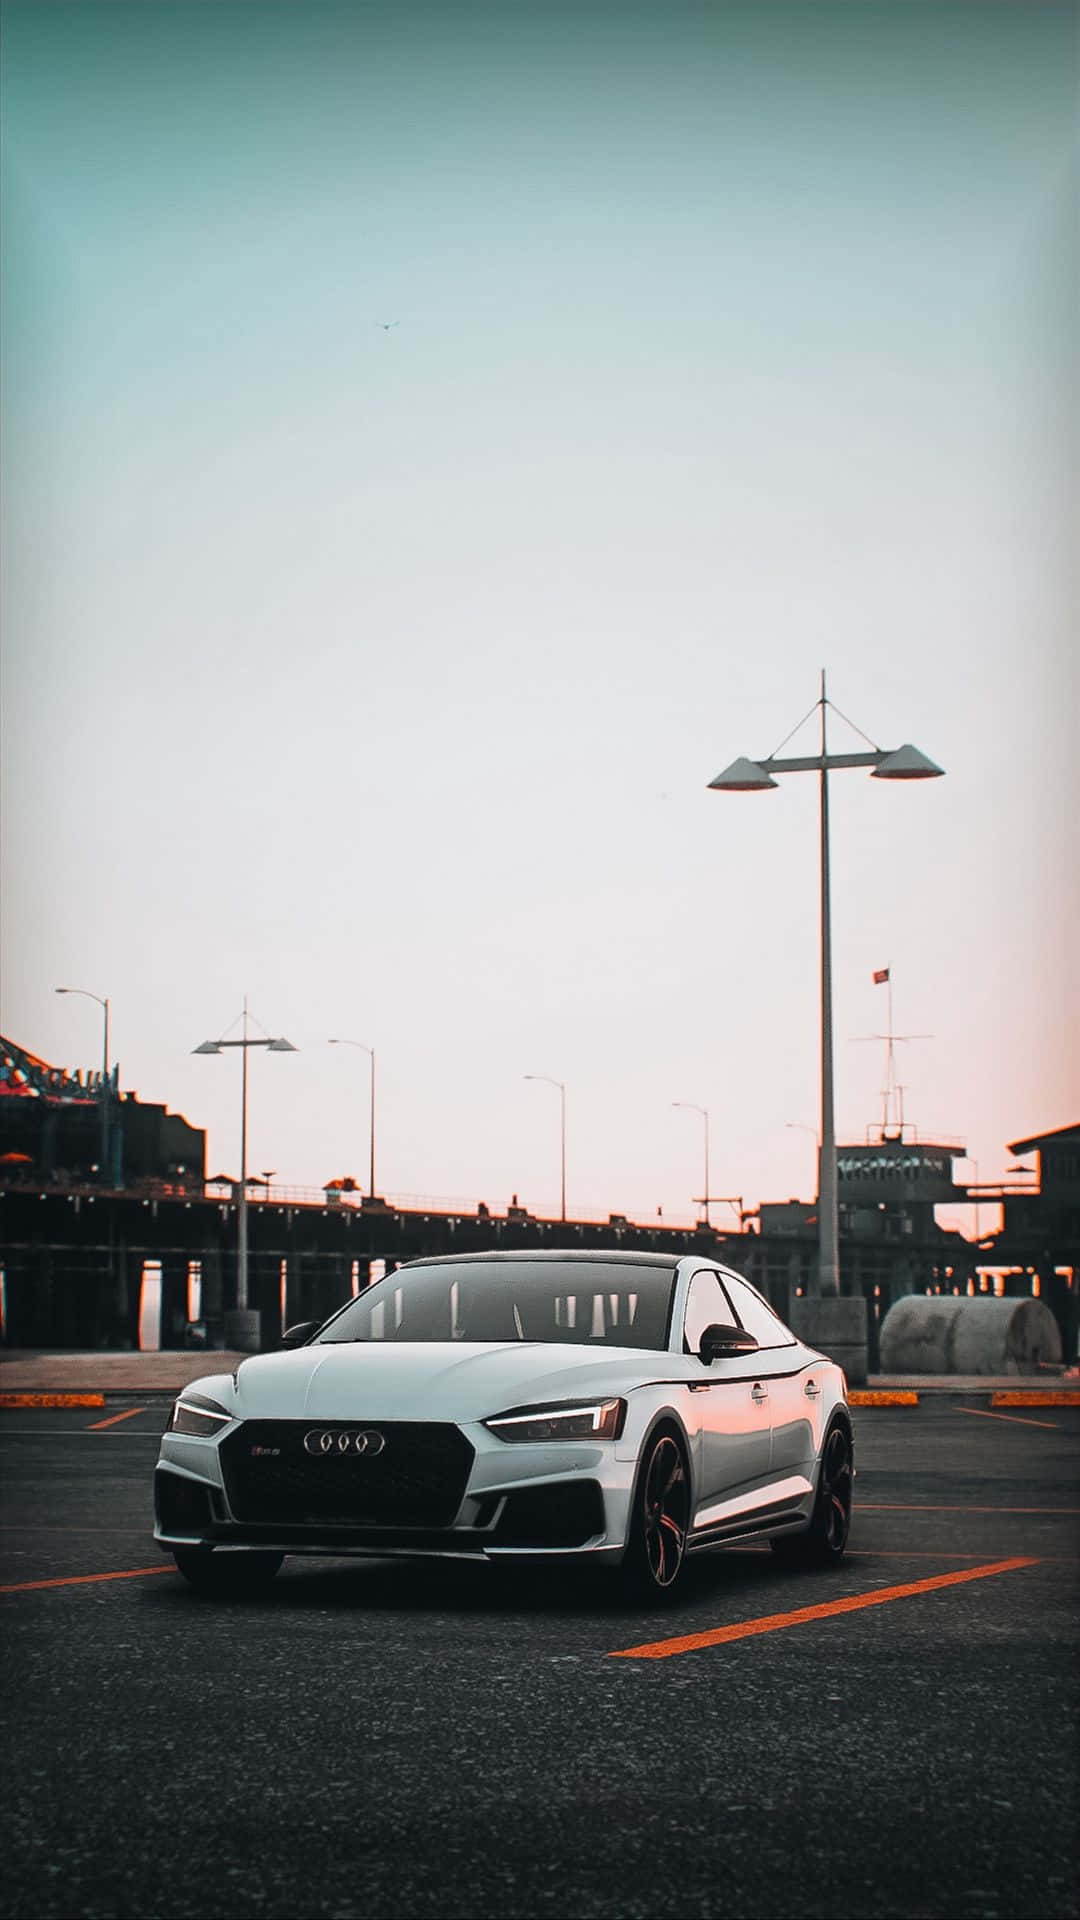 Eleganteauto Audi In Un Contesto Urbano